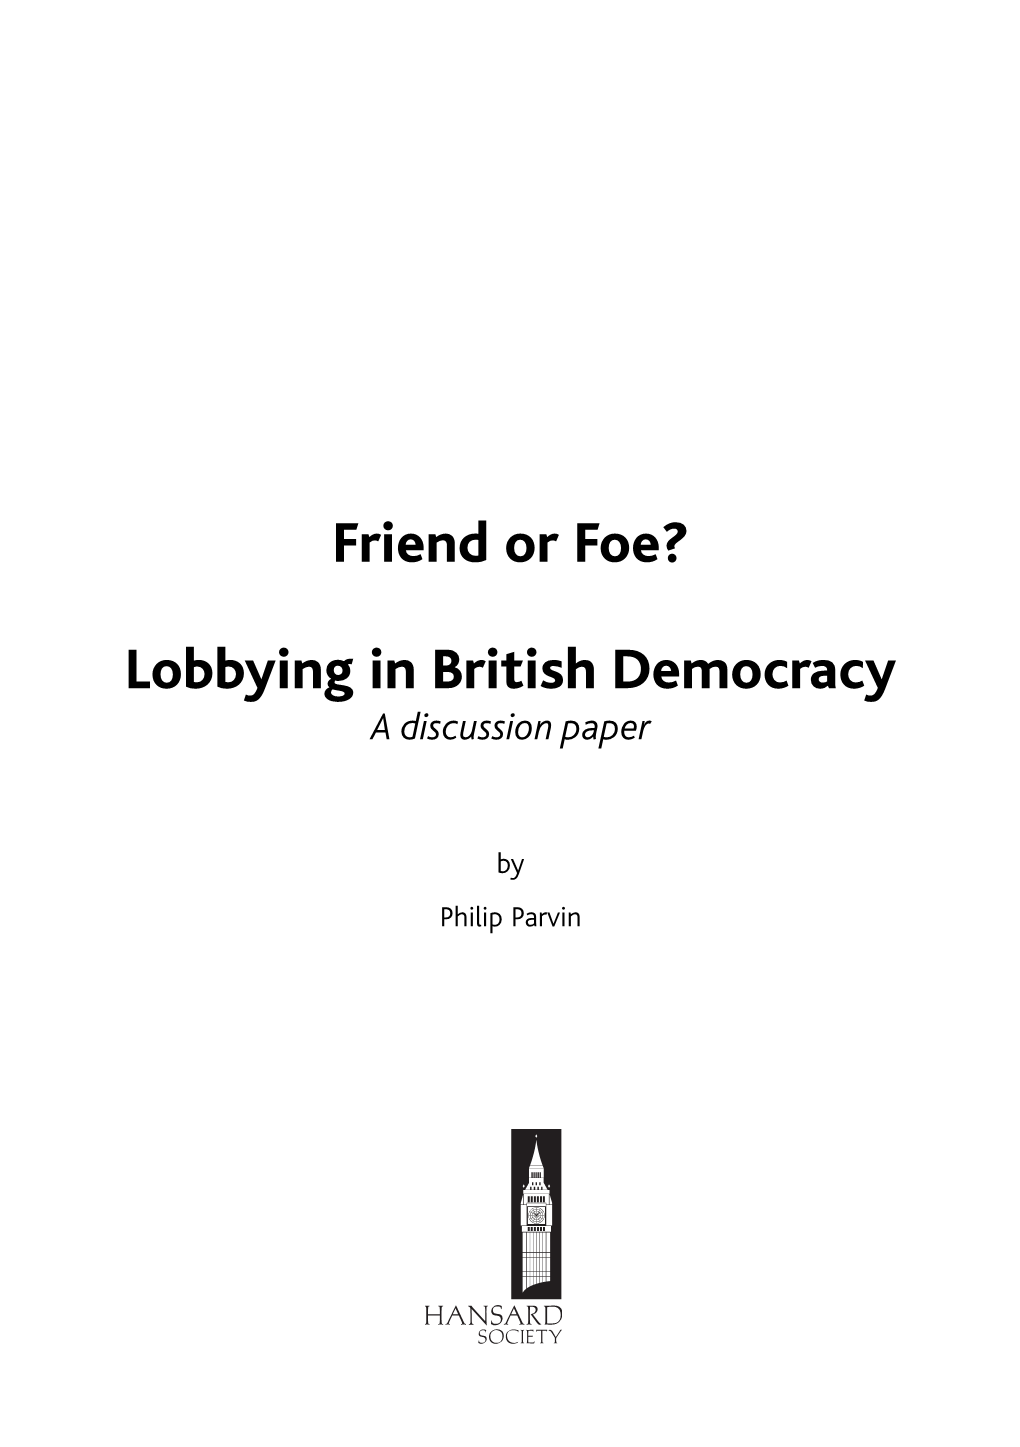 Friend Or Foe? Lobbying in British Democracy